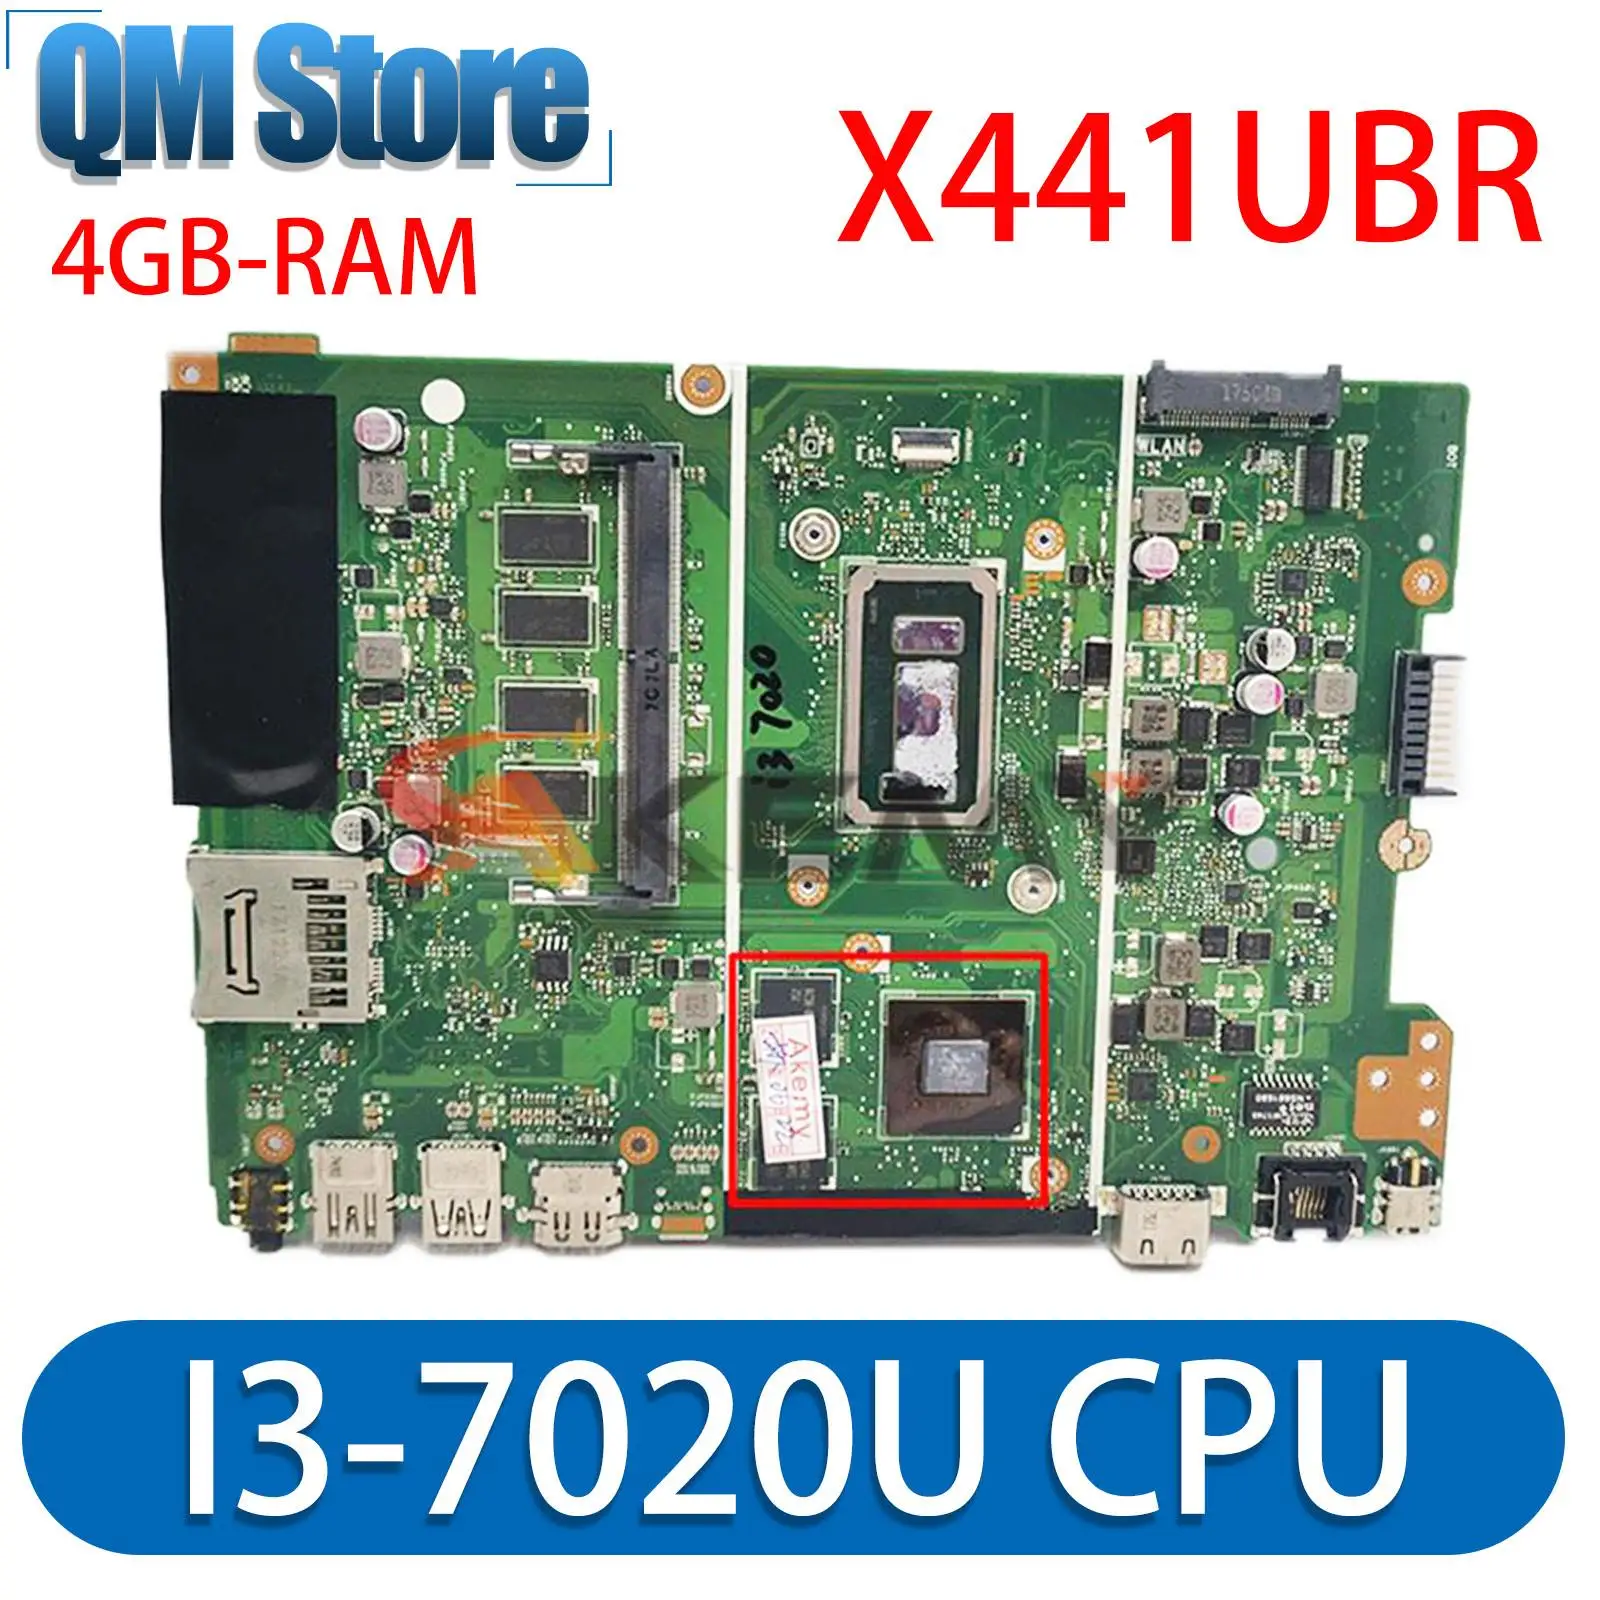 X441UBR оригинальная материнская плата для ASUS X441UV X441UVK X441UR X441URK X441UB материнская плата ноутбука с I3-7020U V2G 4 ГБ оперативной памяти